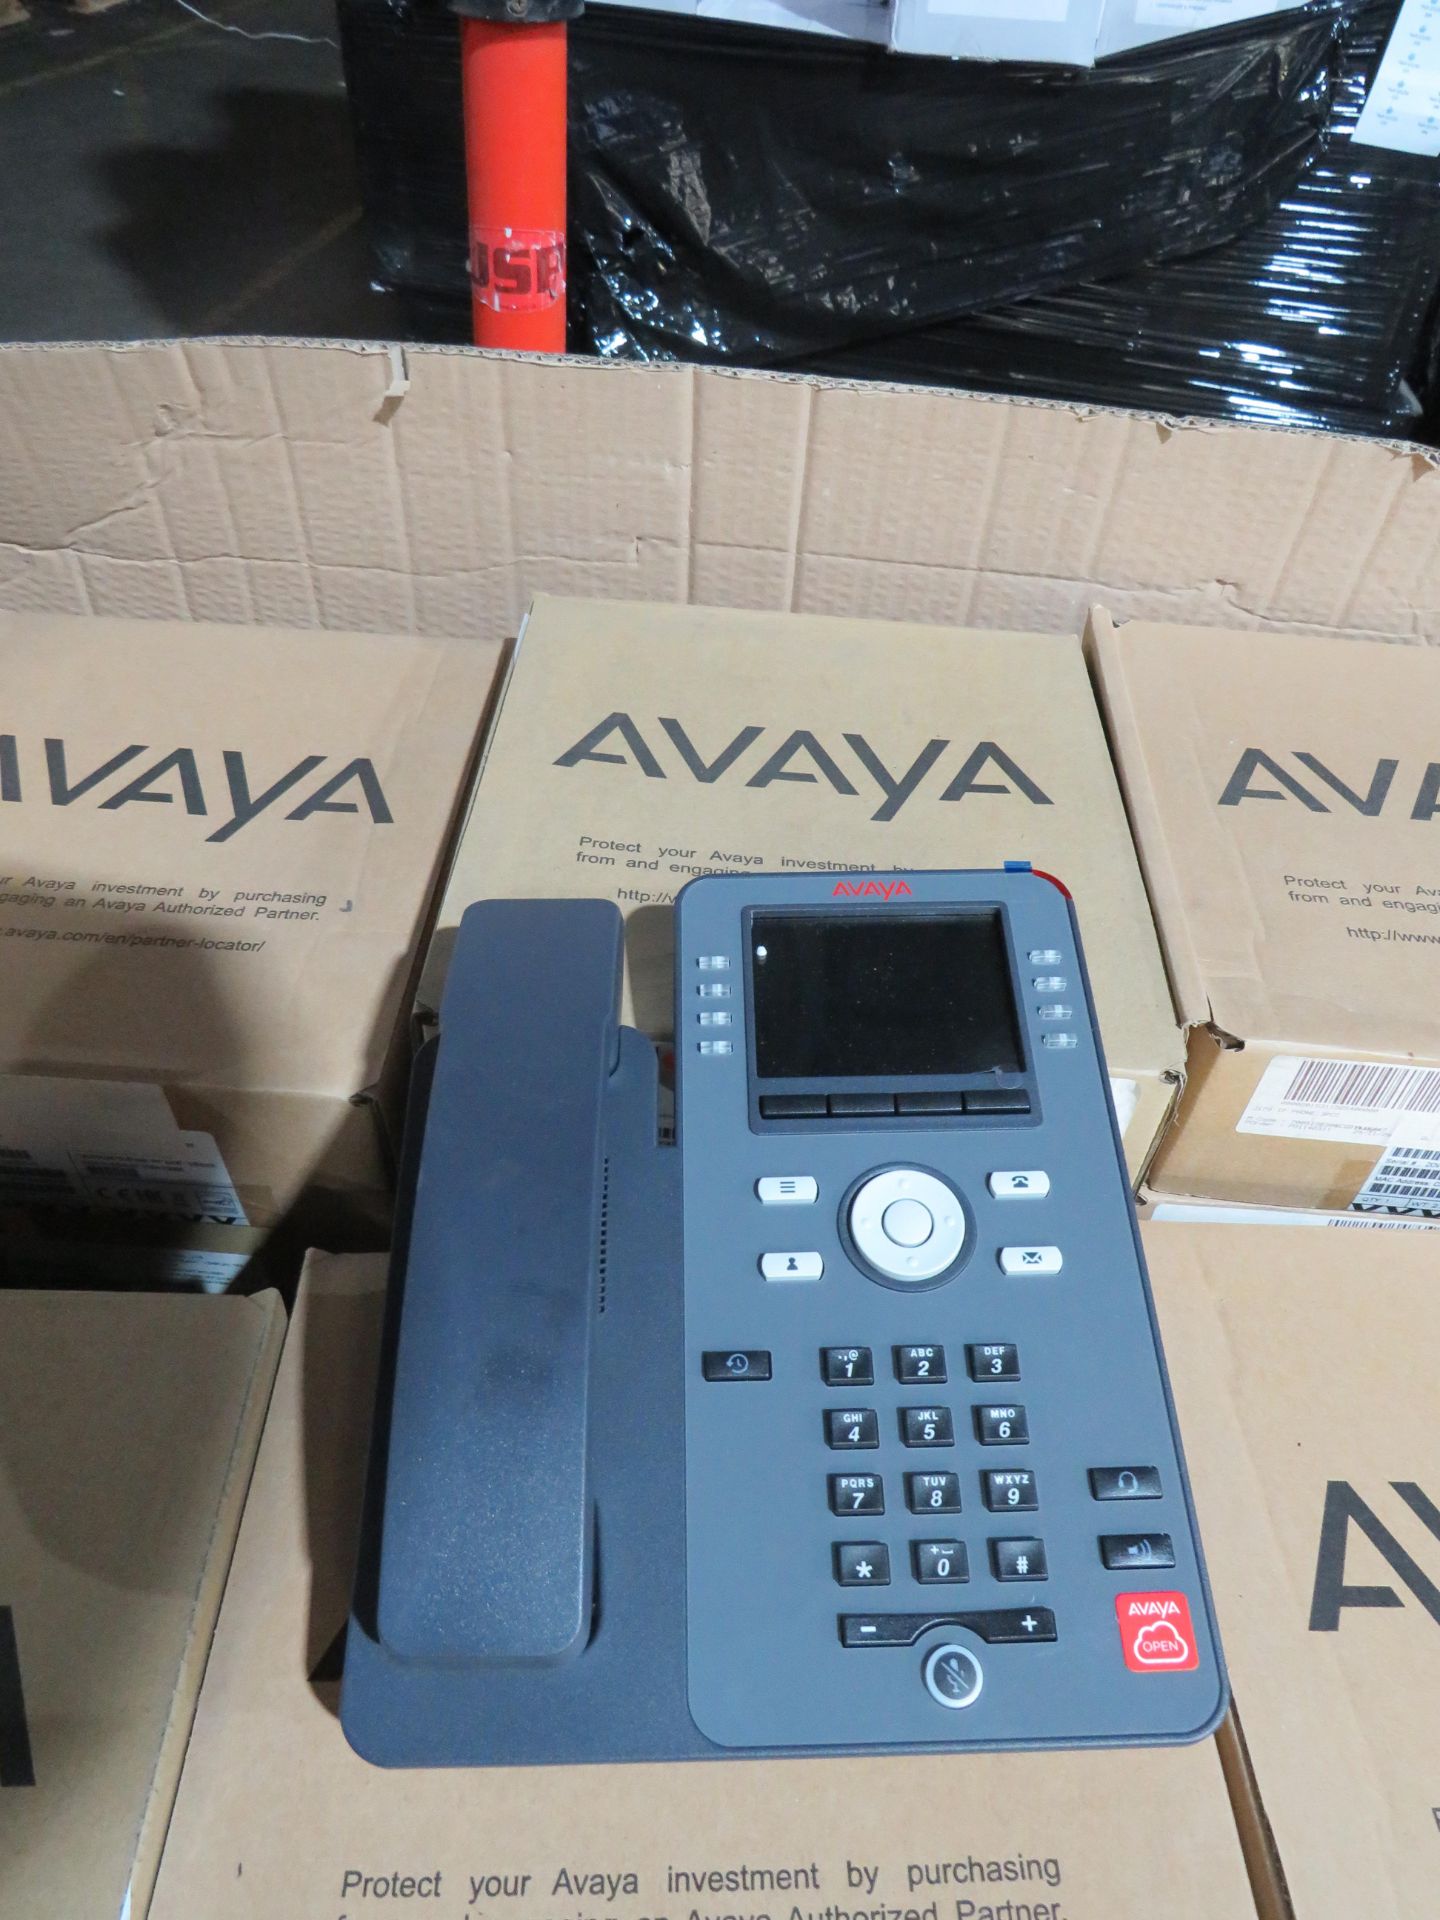 Avaya J179 IP Phone in original packaging looks new